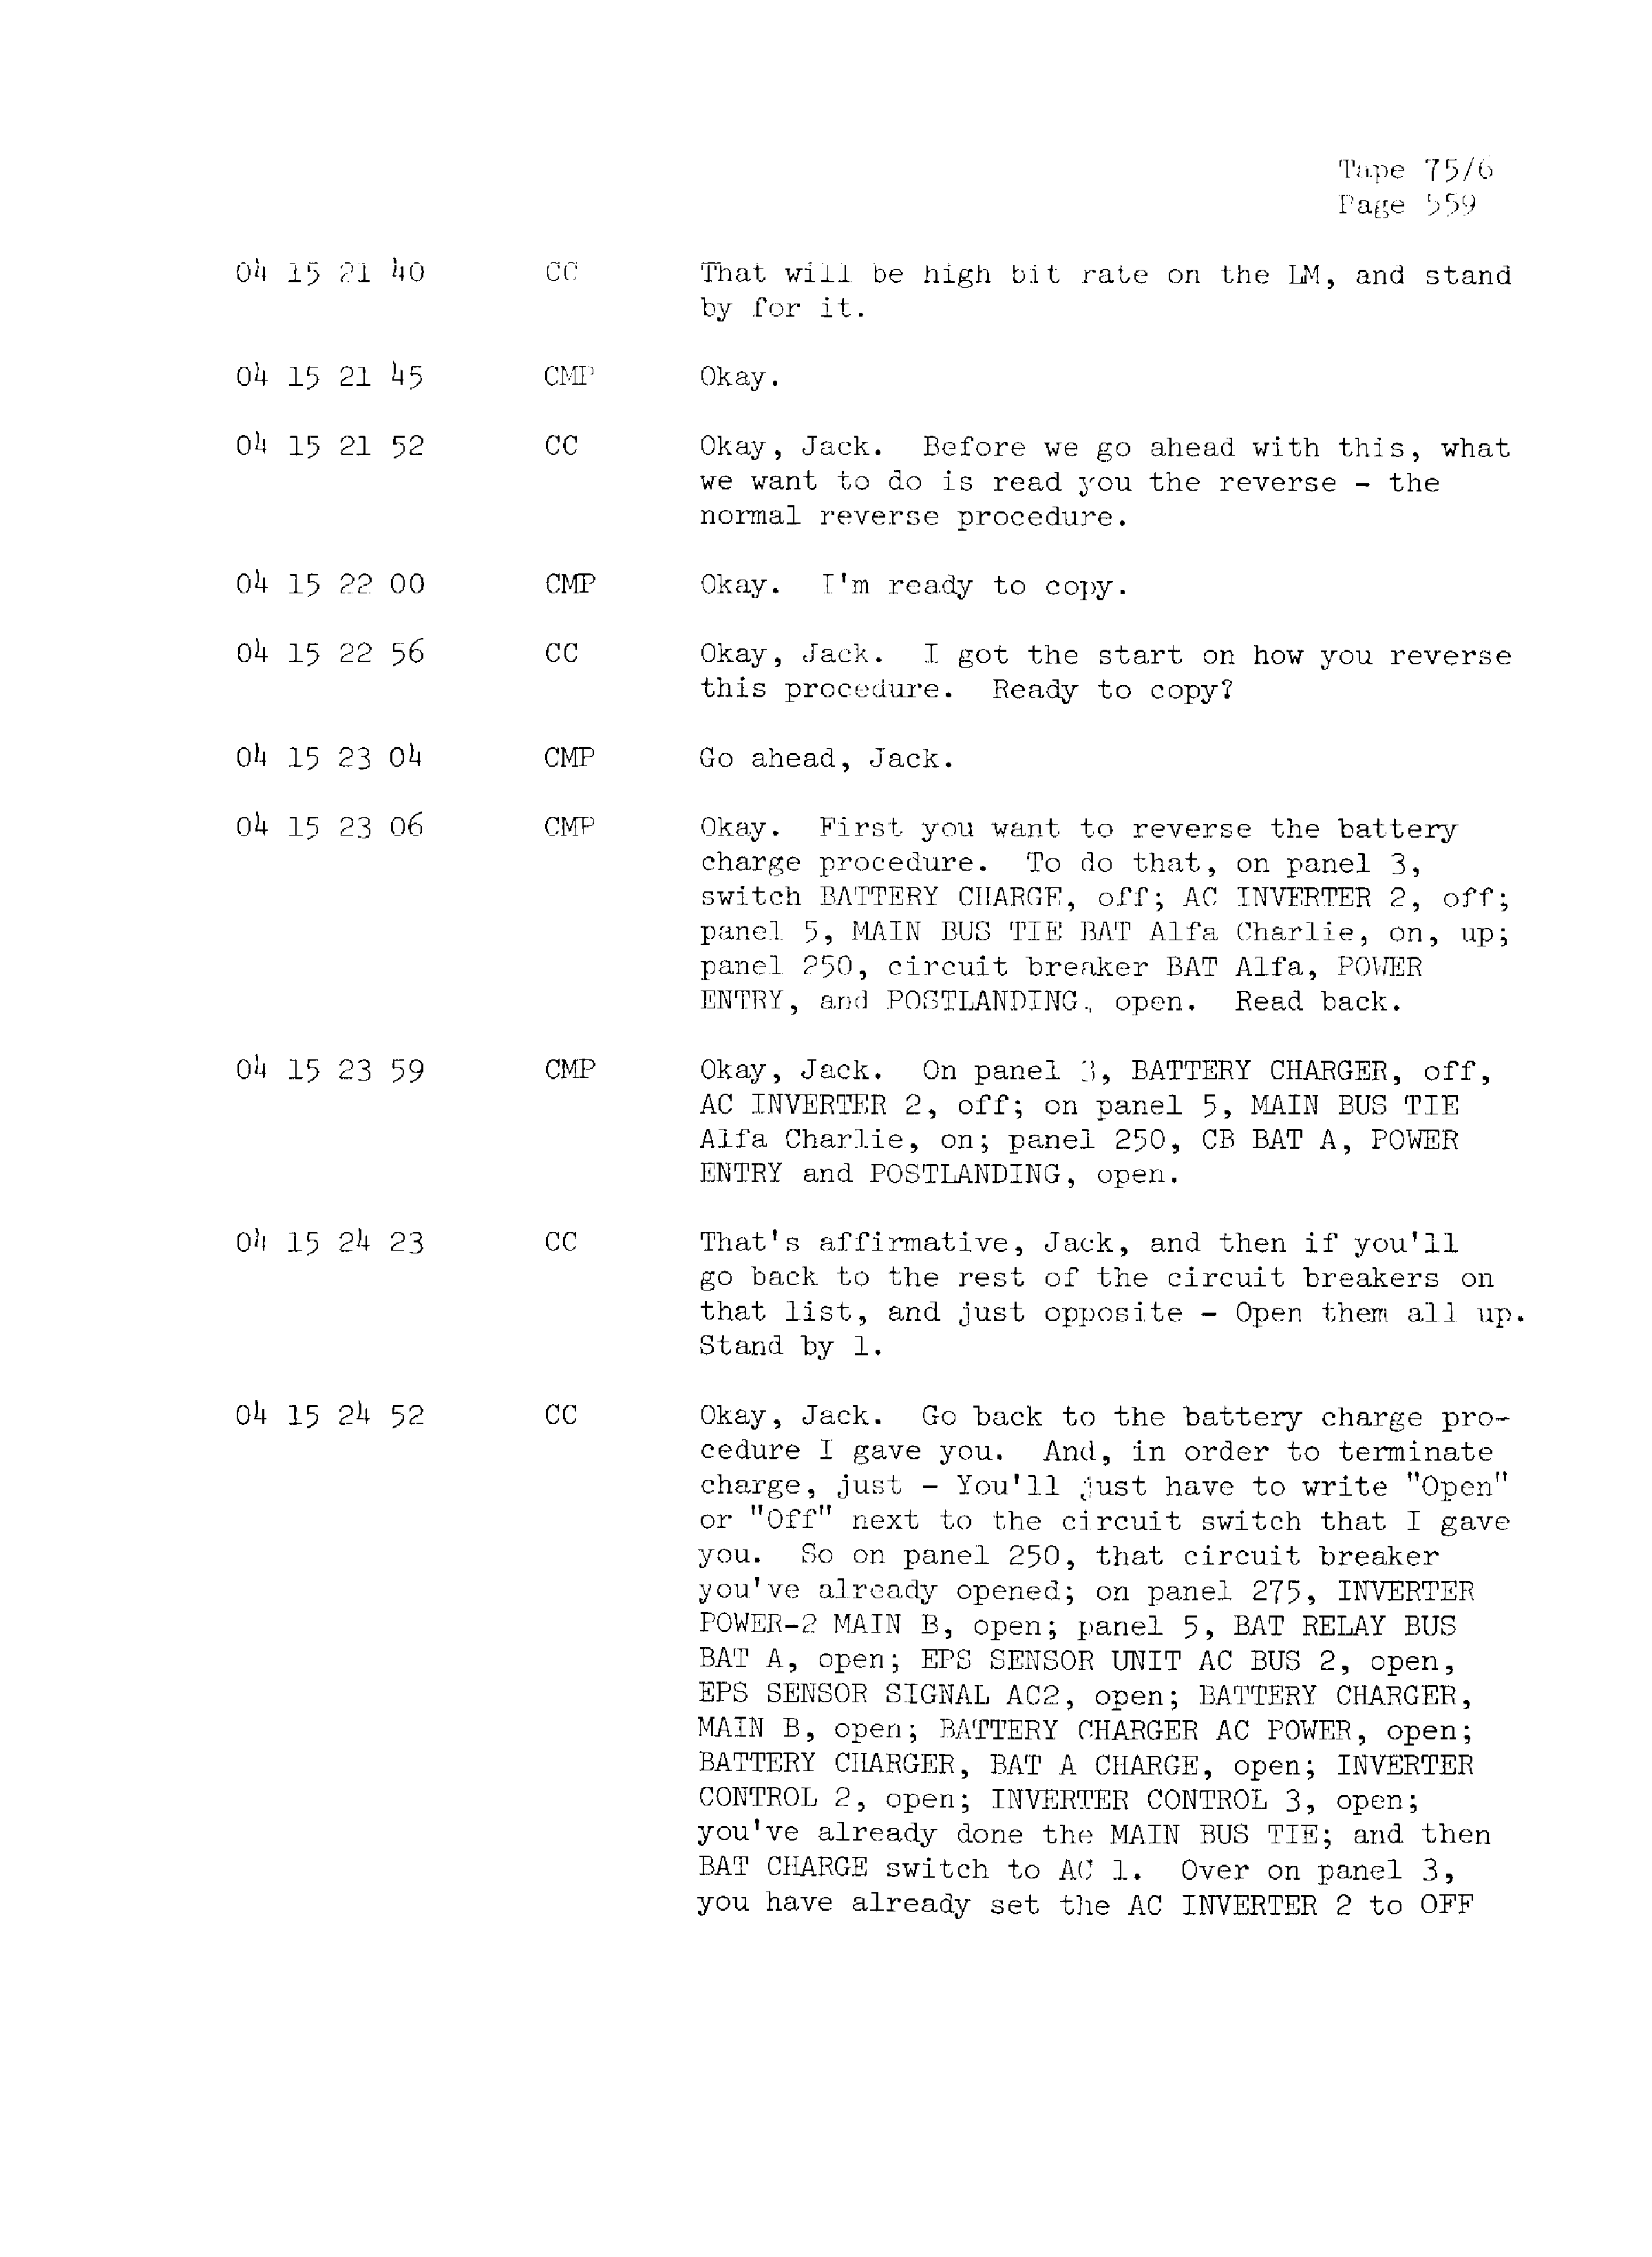 Page 566 of Apollo 13’s original transcript